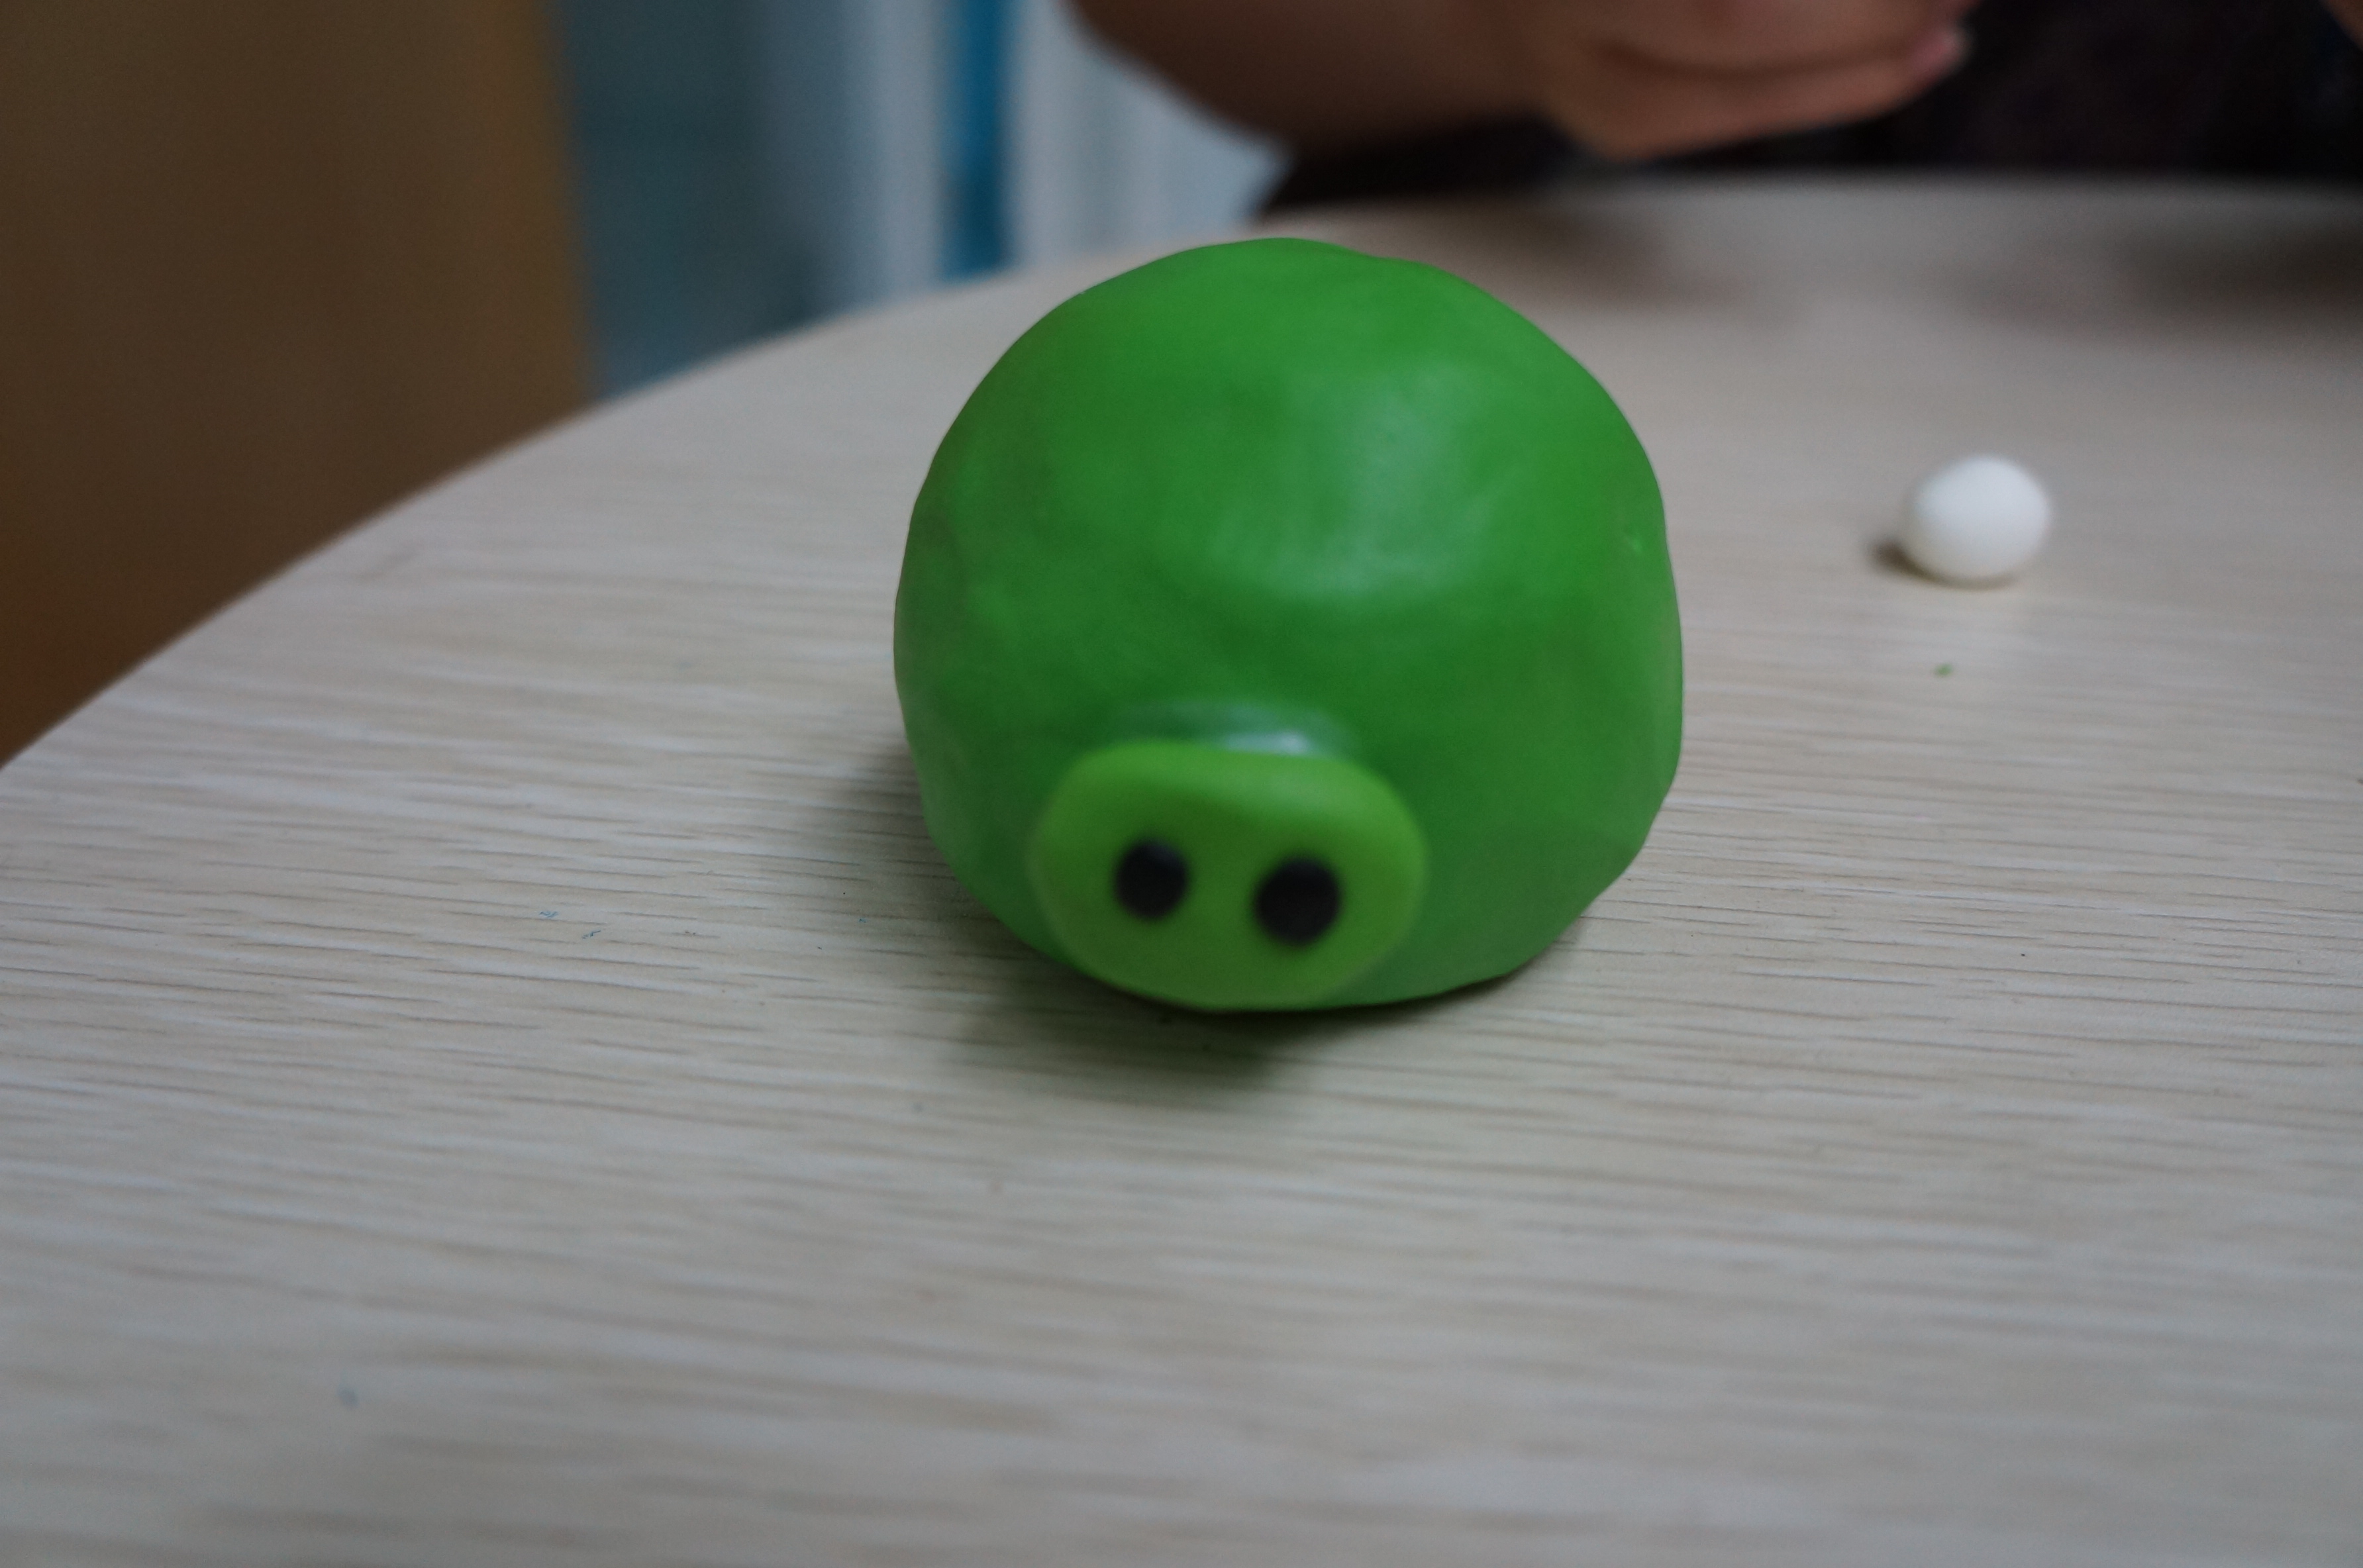 7,取一块深绿色黏土,分两半,揉圆,压扁,做成水滴状,粘在绿皮猪头上